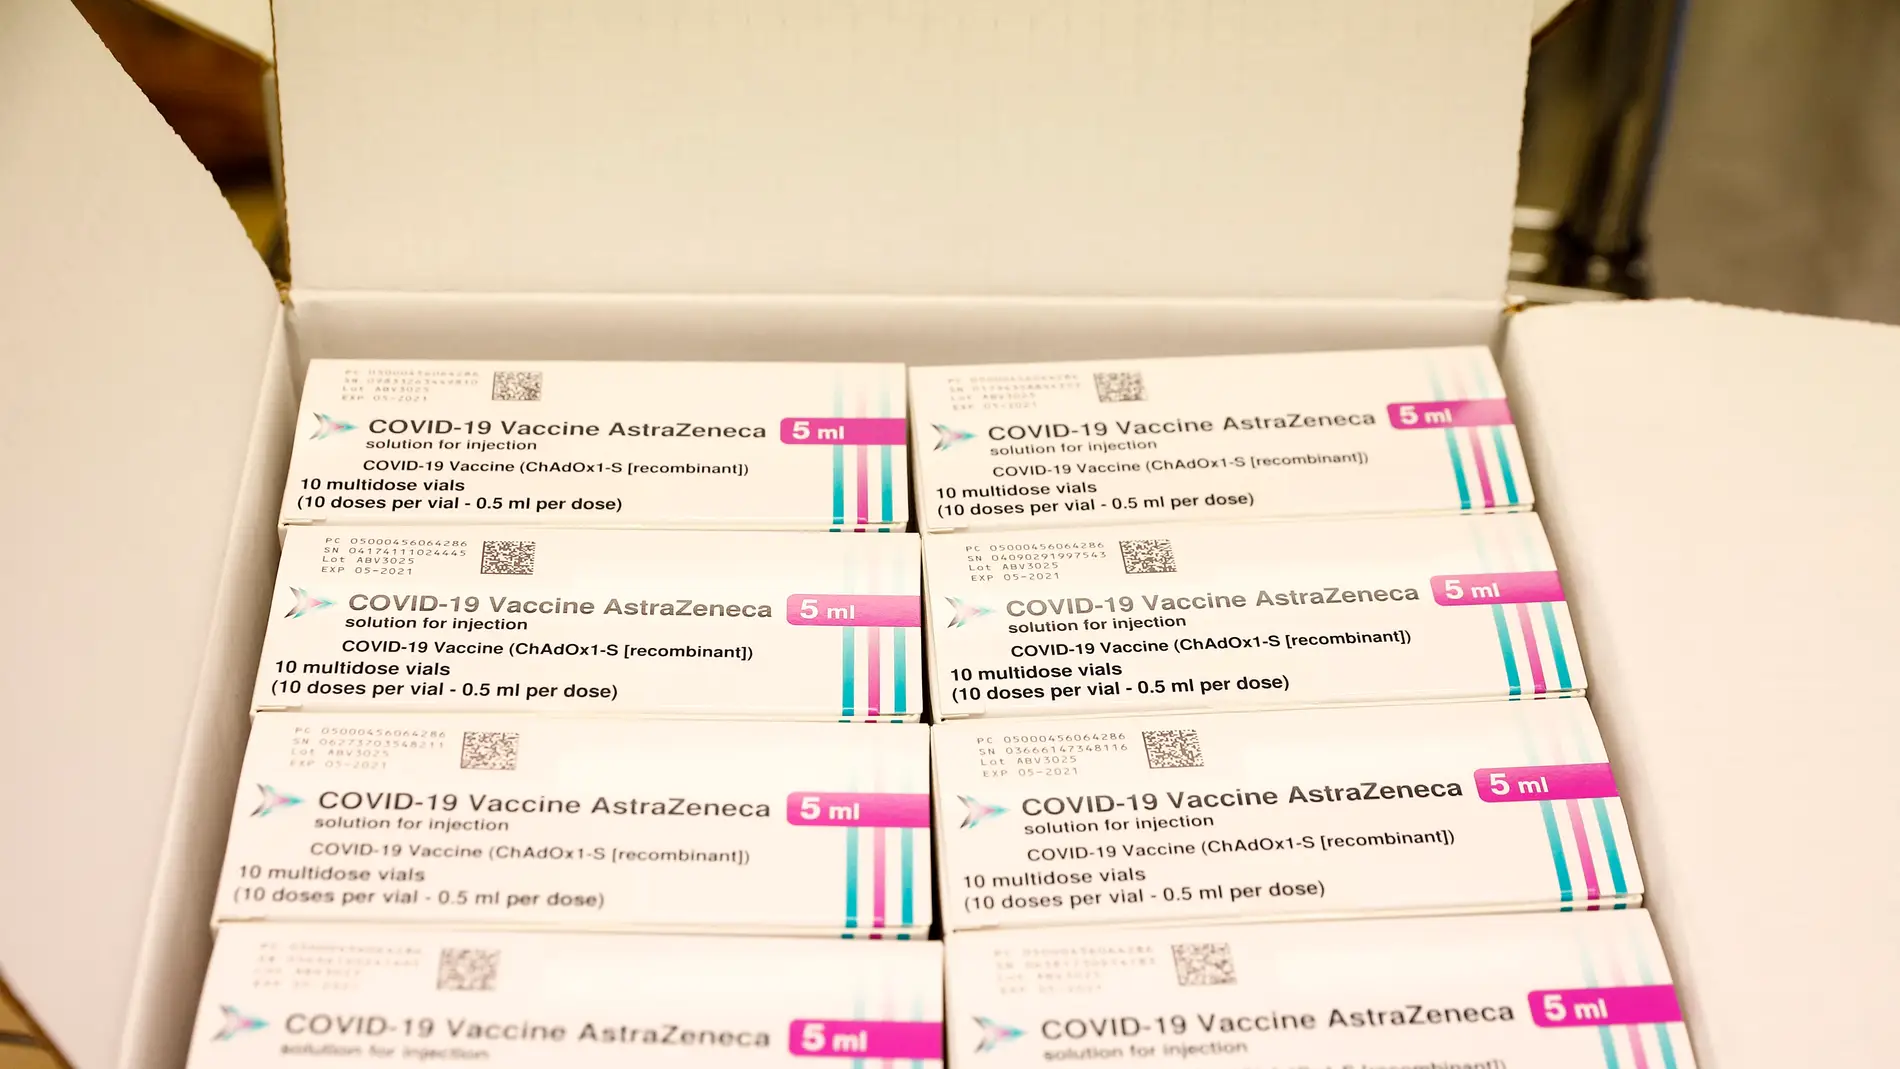 Los profeores de menos de 55 años recibirán la vacuna de AstraZeneca